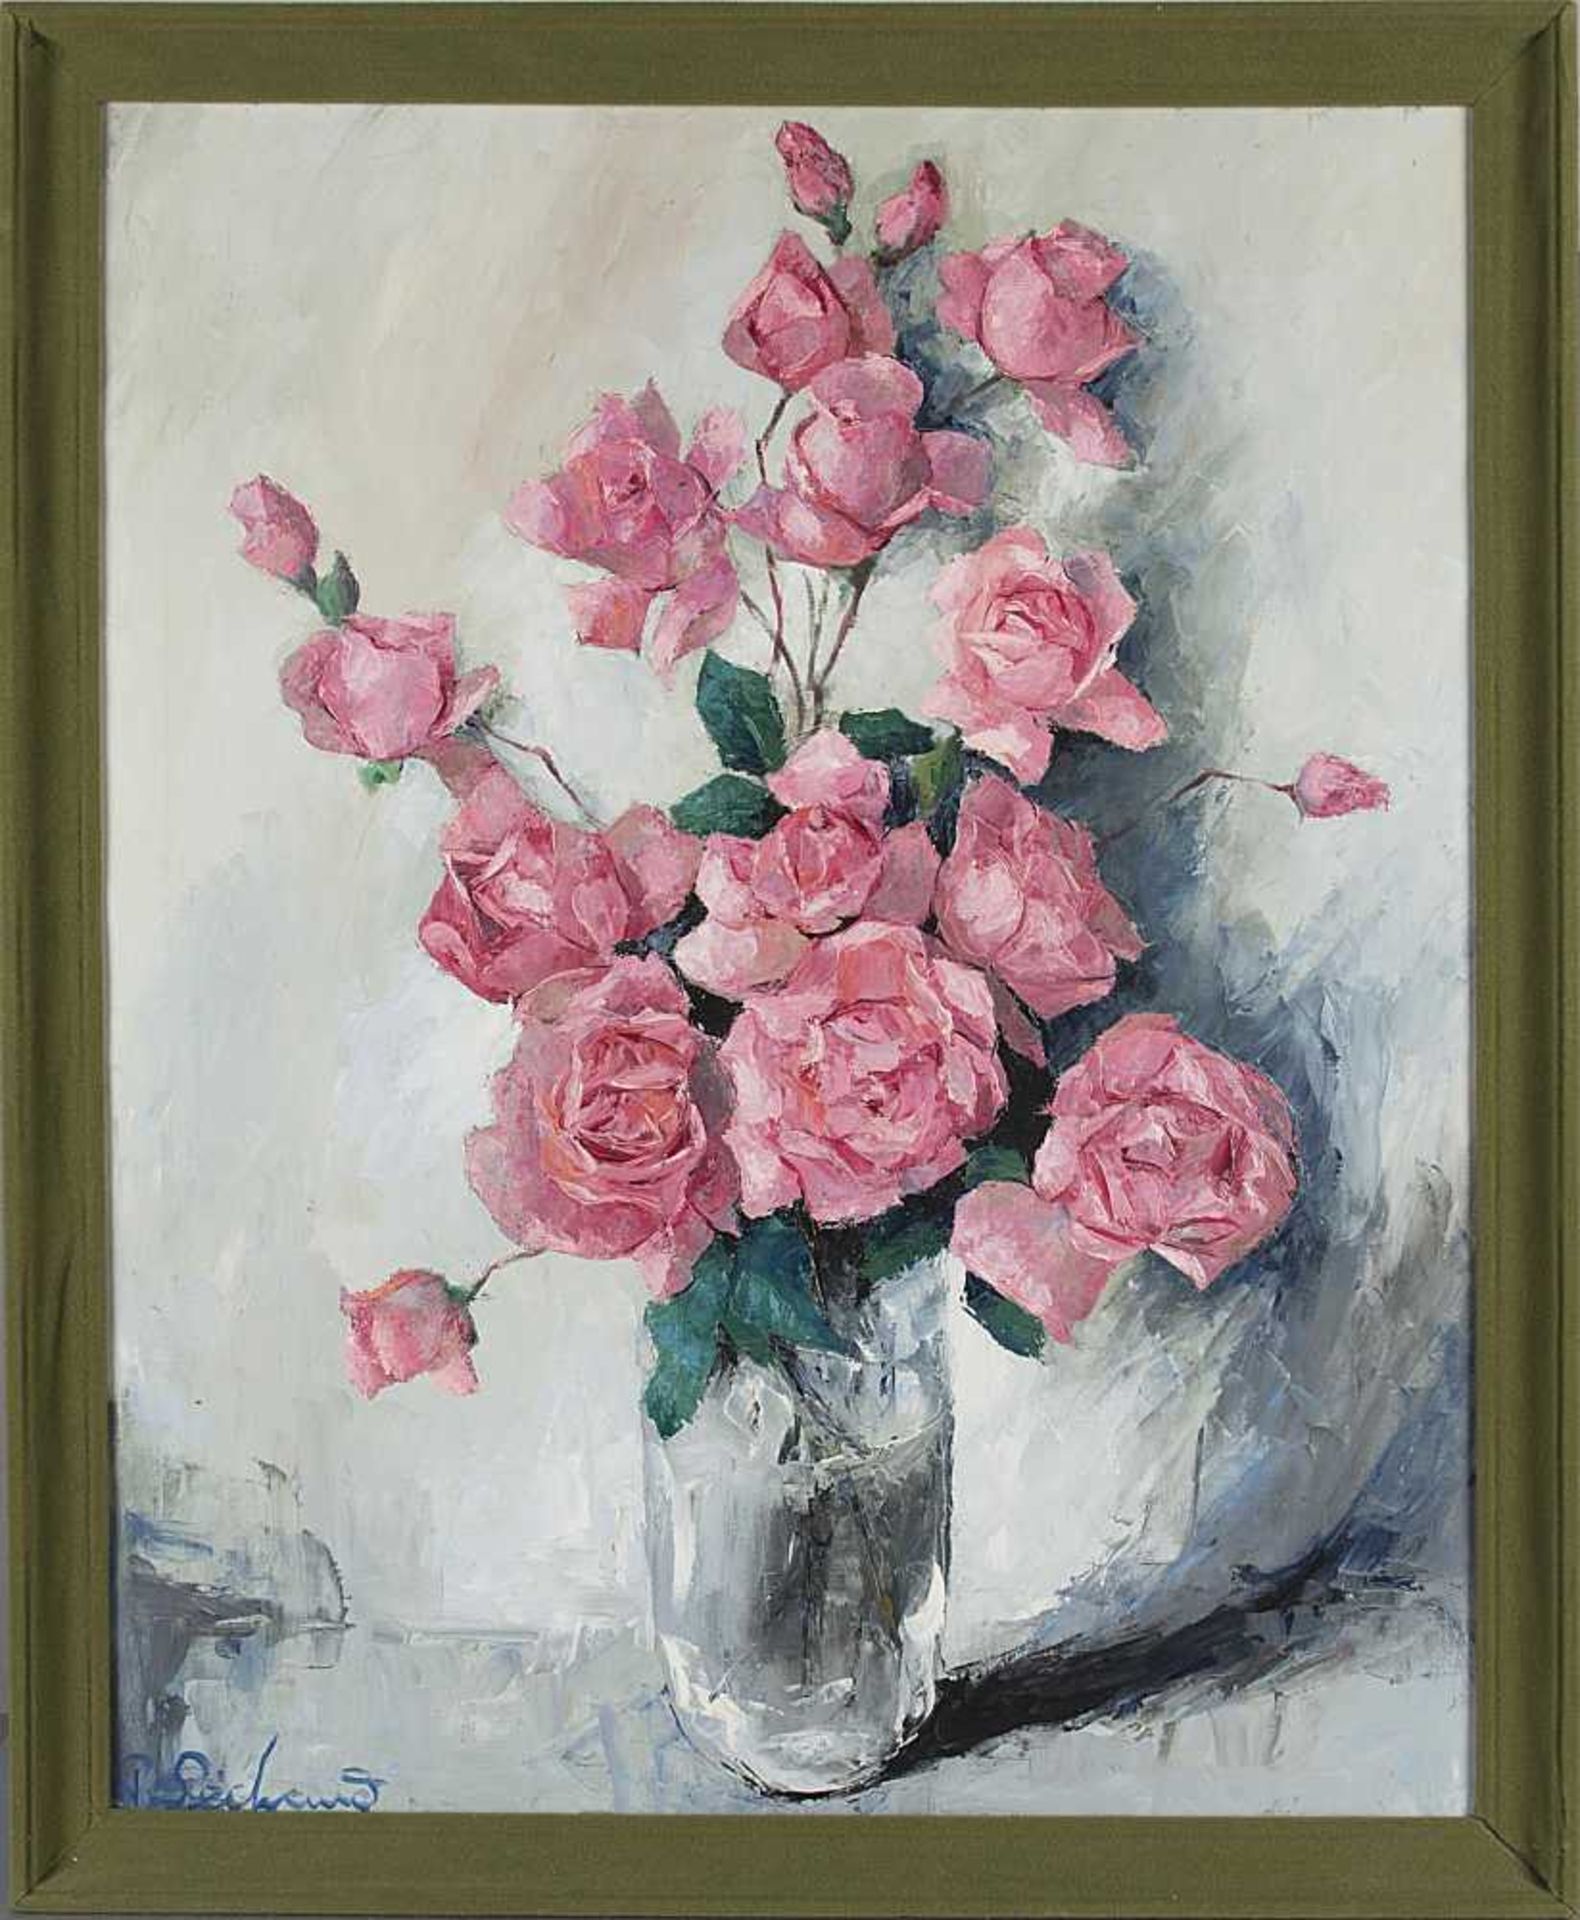 huile sur toile de Paul SÉCHAUD (1906-1982, CH) "Roses" sbg 81x65 cm - Image 2 of 2